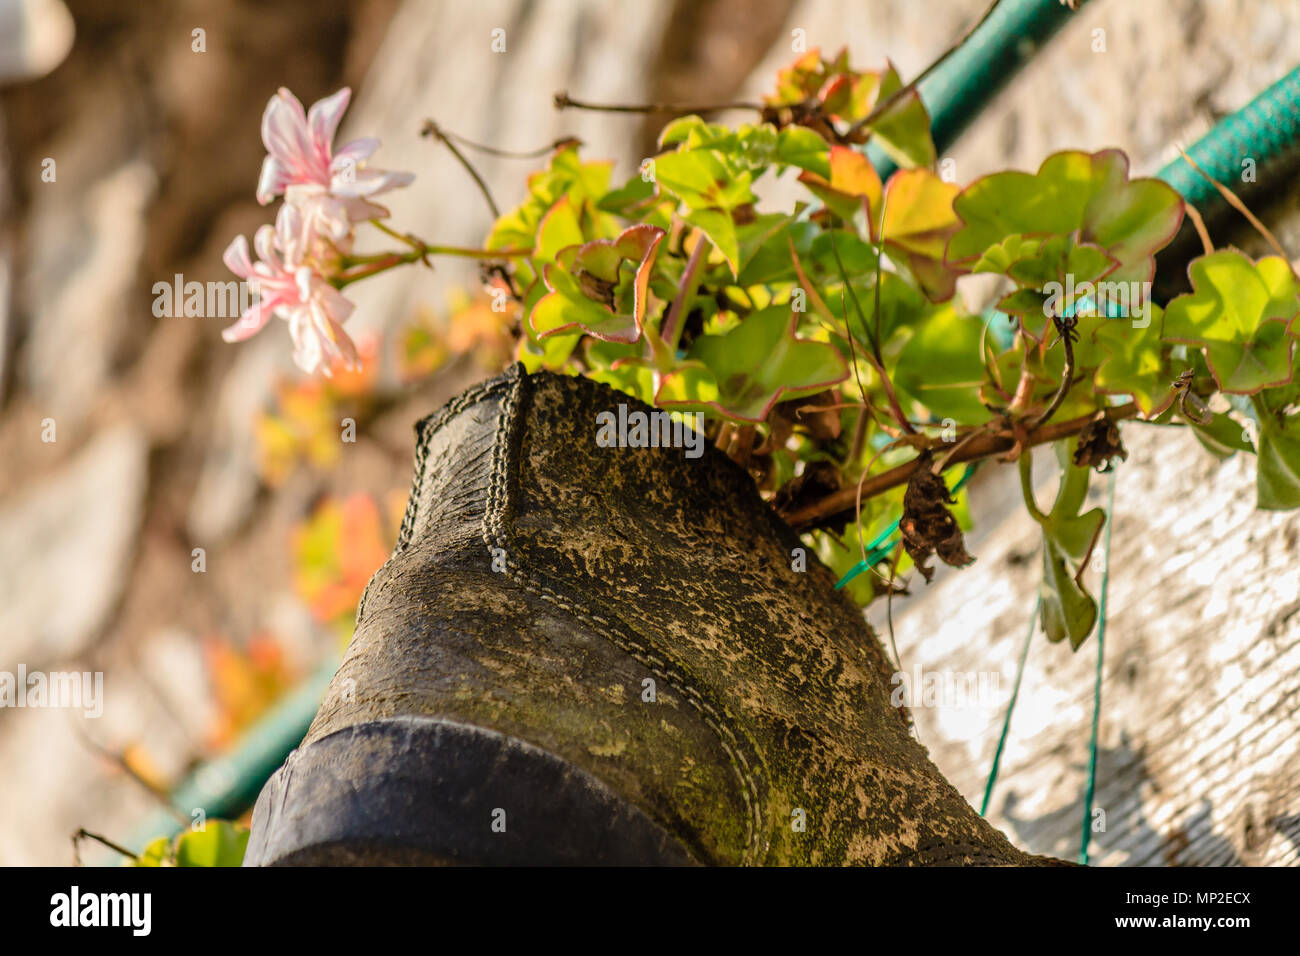 Blumen wachsen in einem alten Schuh, der als übertopf verwendet wird. Teignmouth, Devon. Feb 2018. Stockfoto